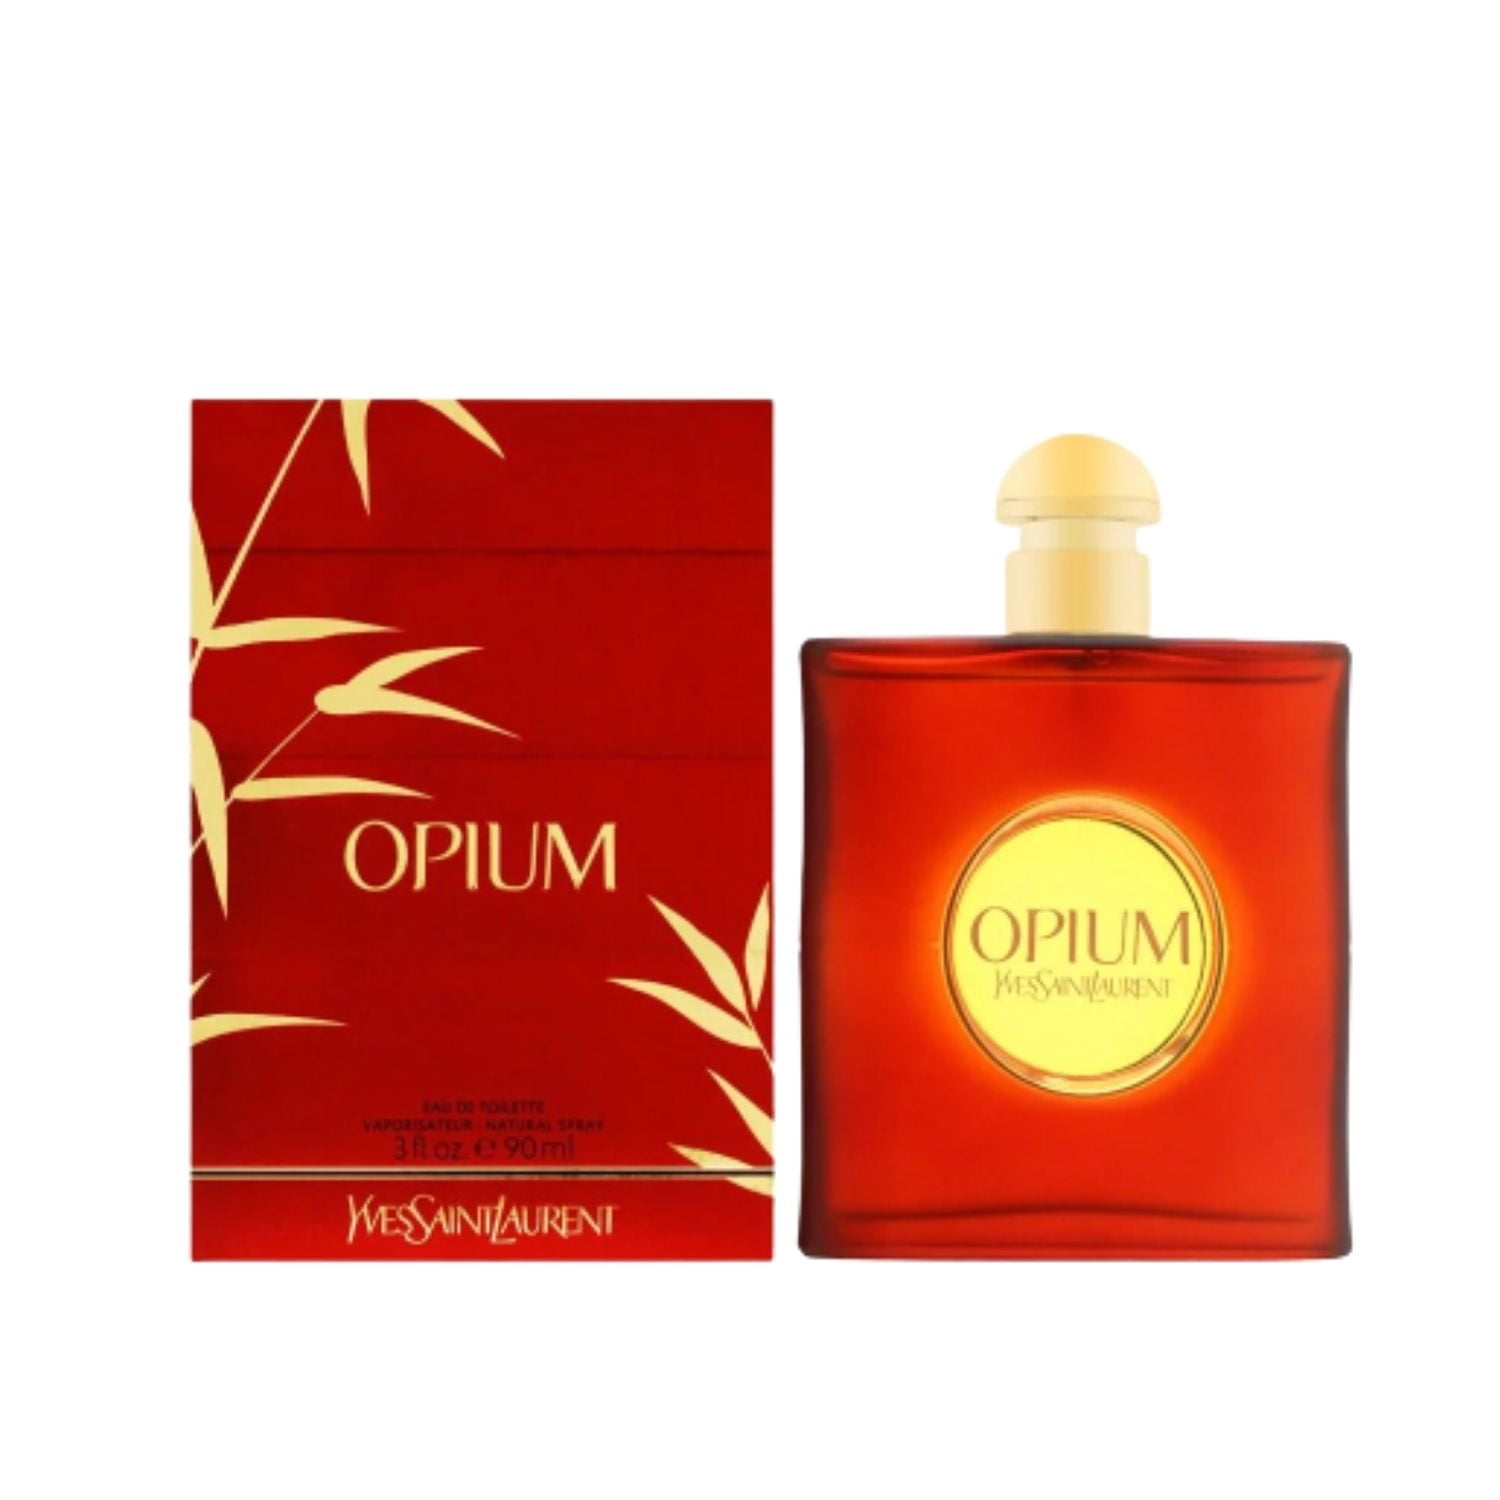 Yves Saint Laurent Opium Eau De Toilette Vaporisateur Spray, Perfume ...